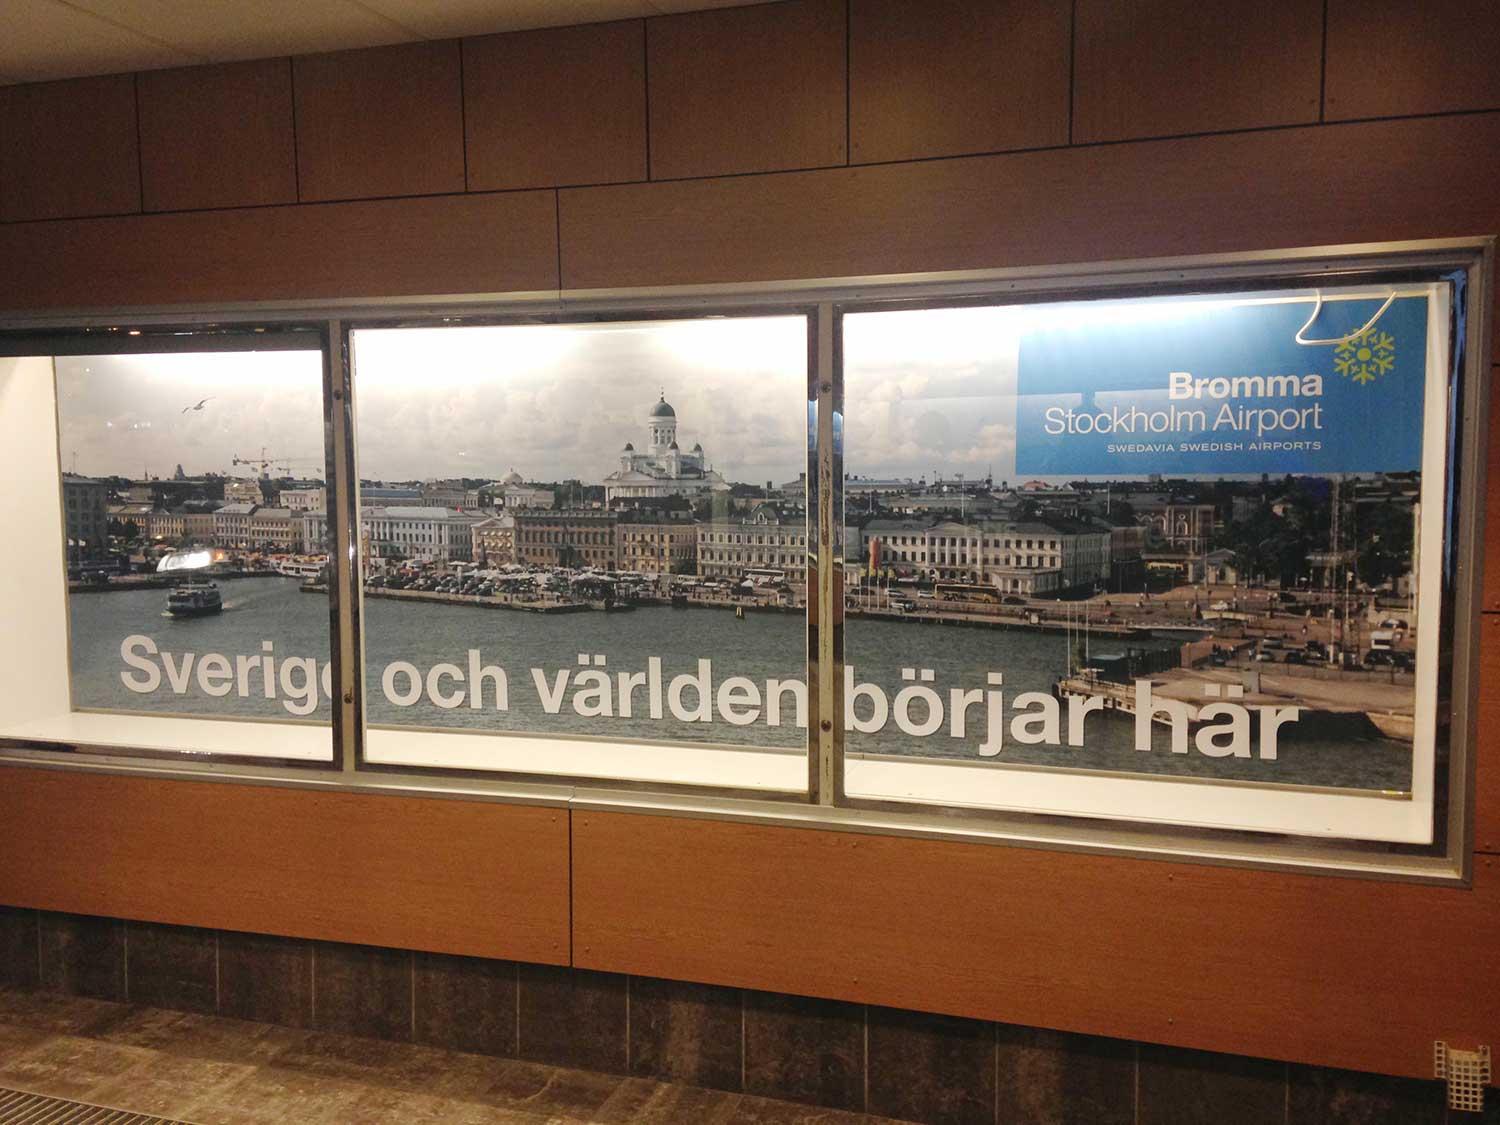 Reklamen på Bromma flygplats som förbryllar.